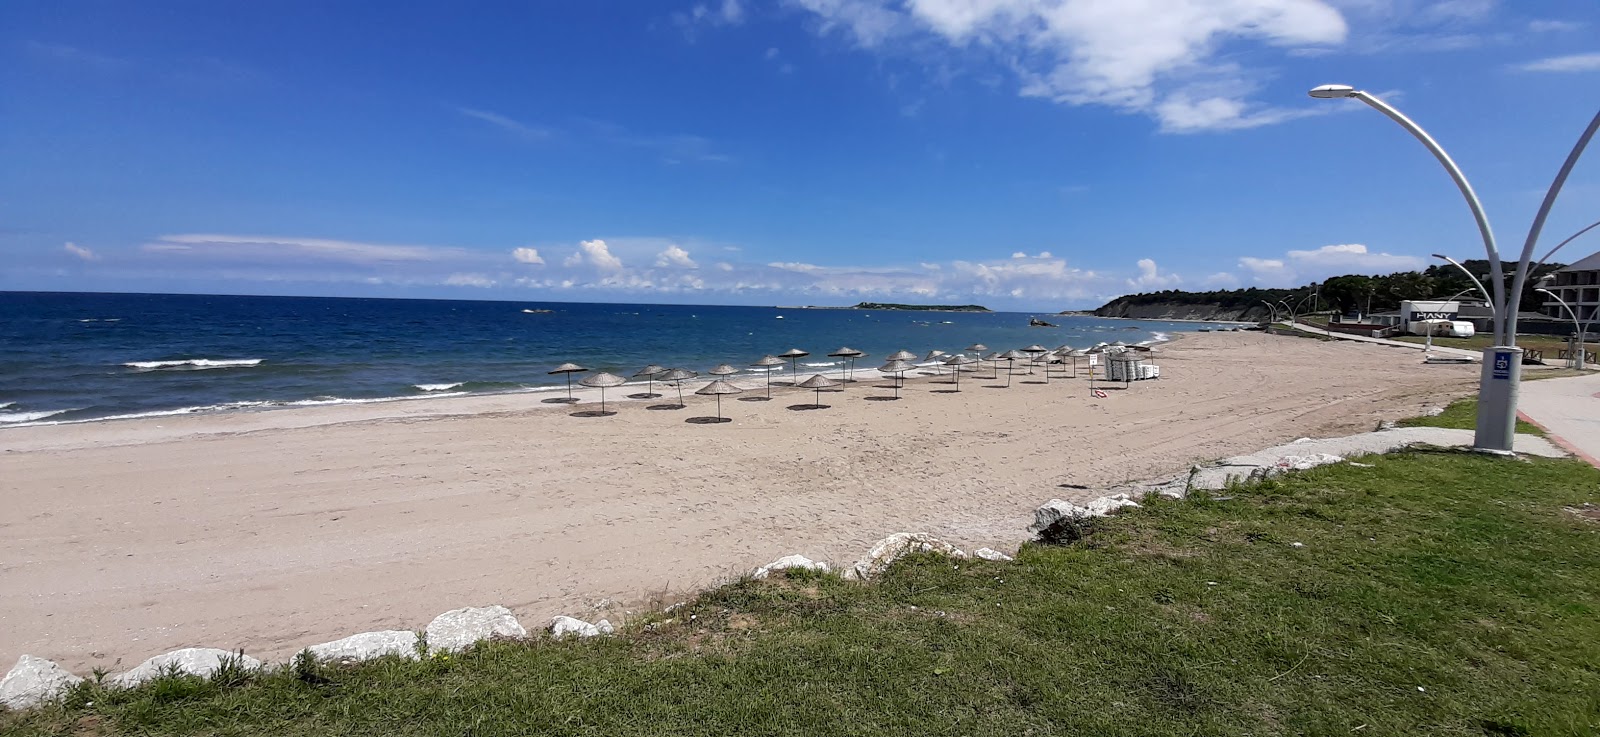 Foto von Cebeci Radio Plaj mit langer gerader strand